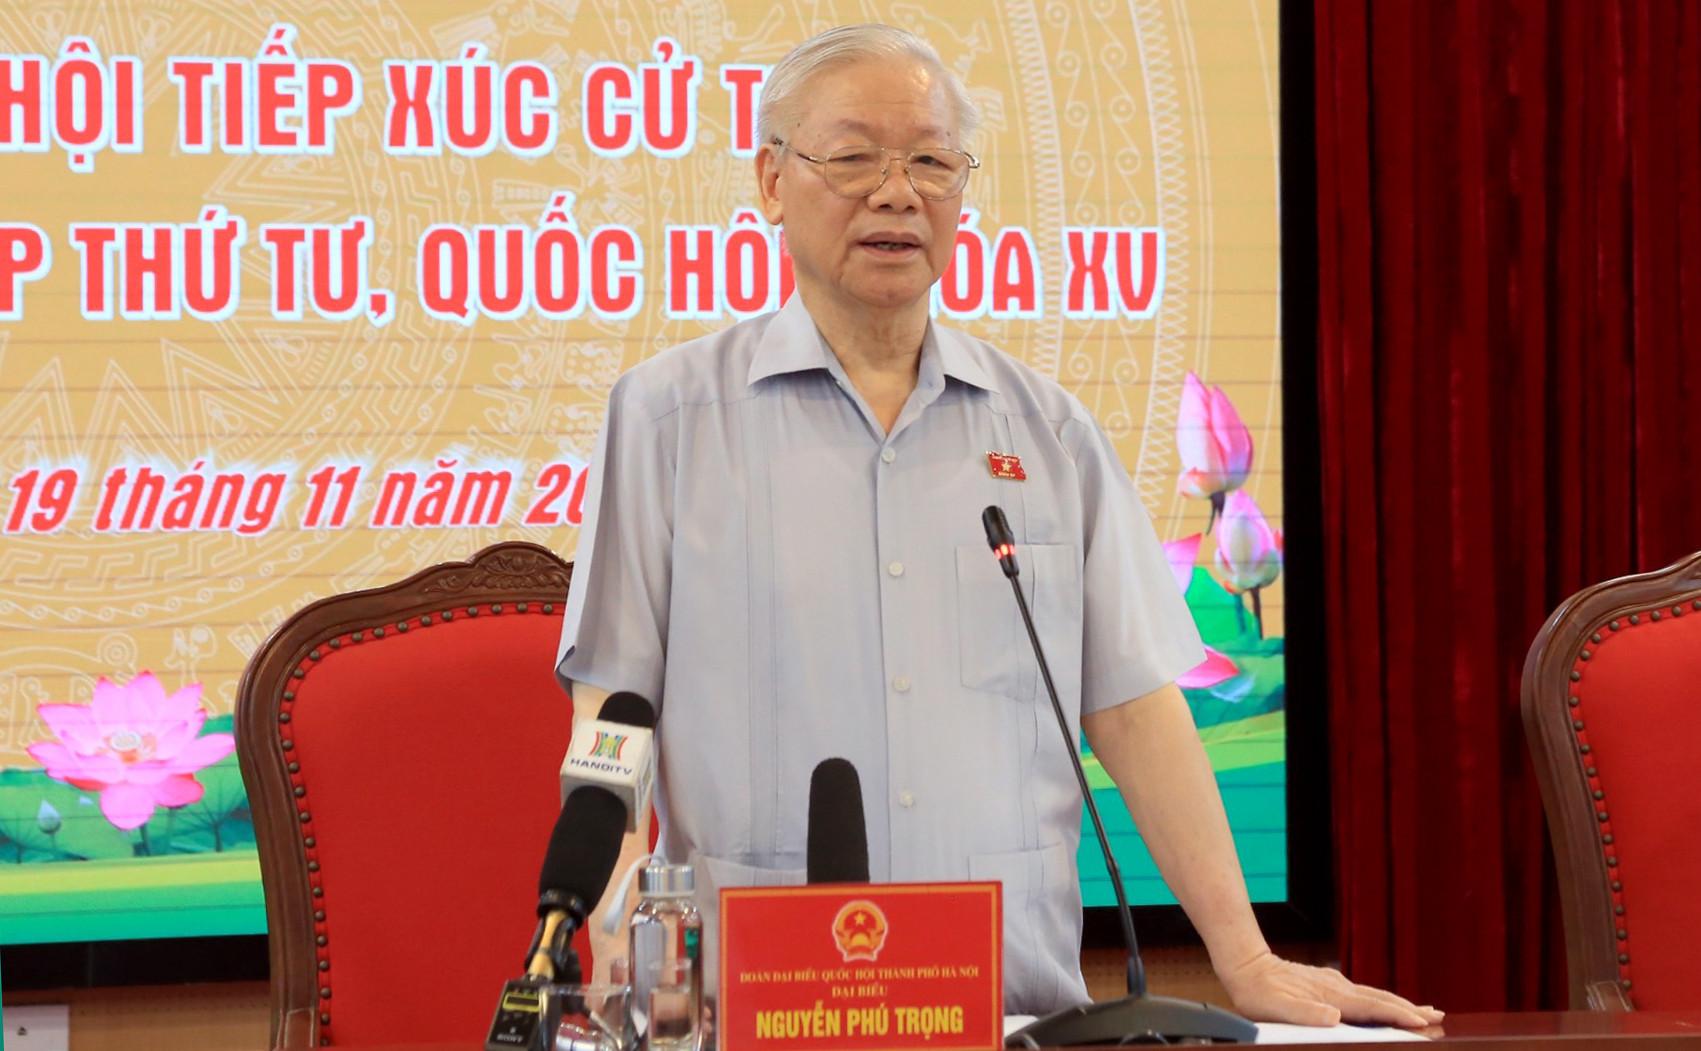 Tổng Bí thư Nguyễn Phú Trọng: 'Sắp tới sẽ làm vụ nào đều được kể tên, khối anh sợ'